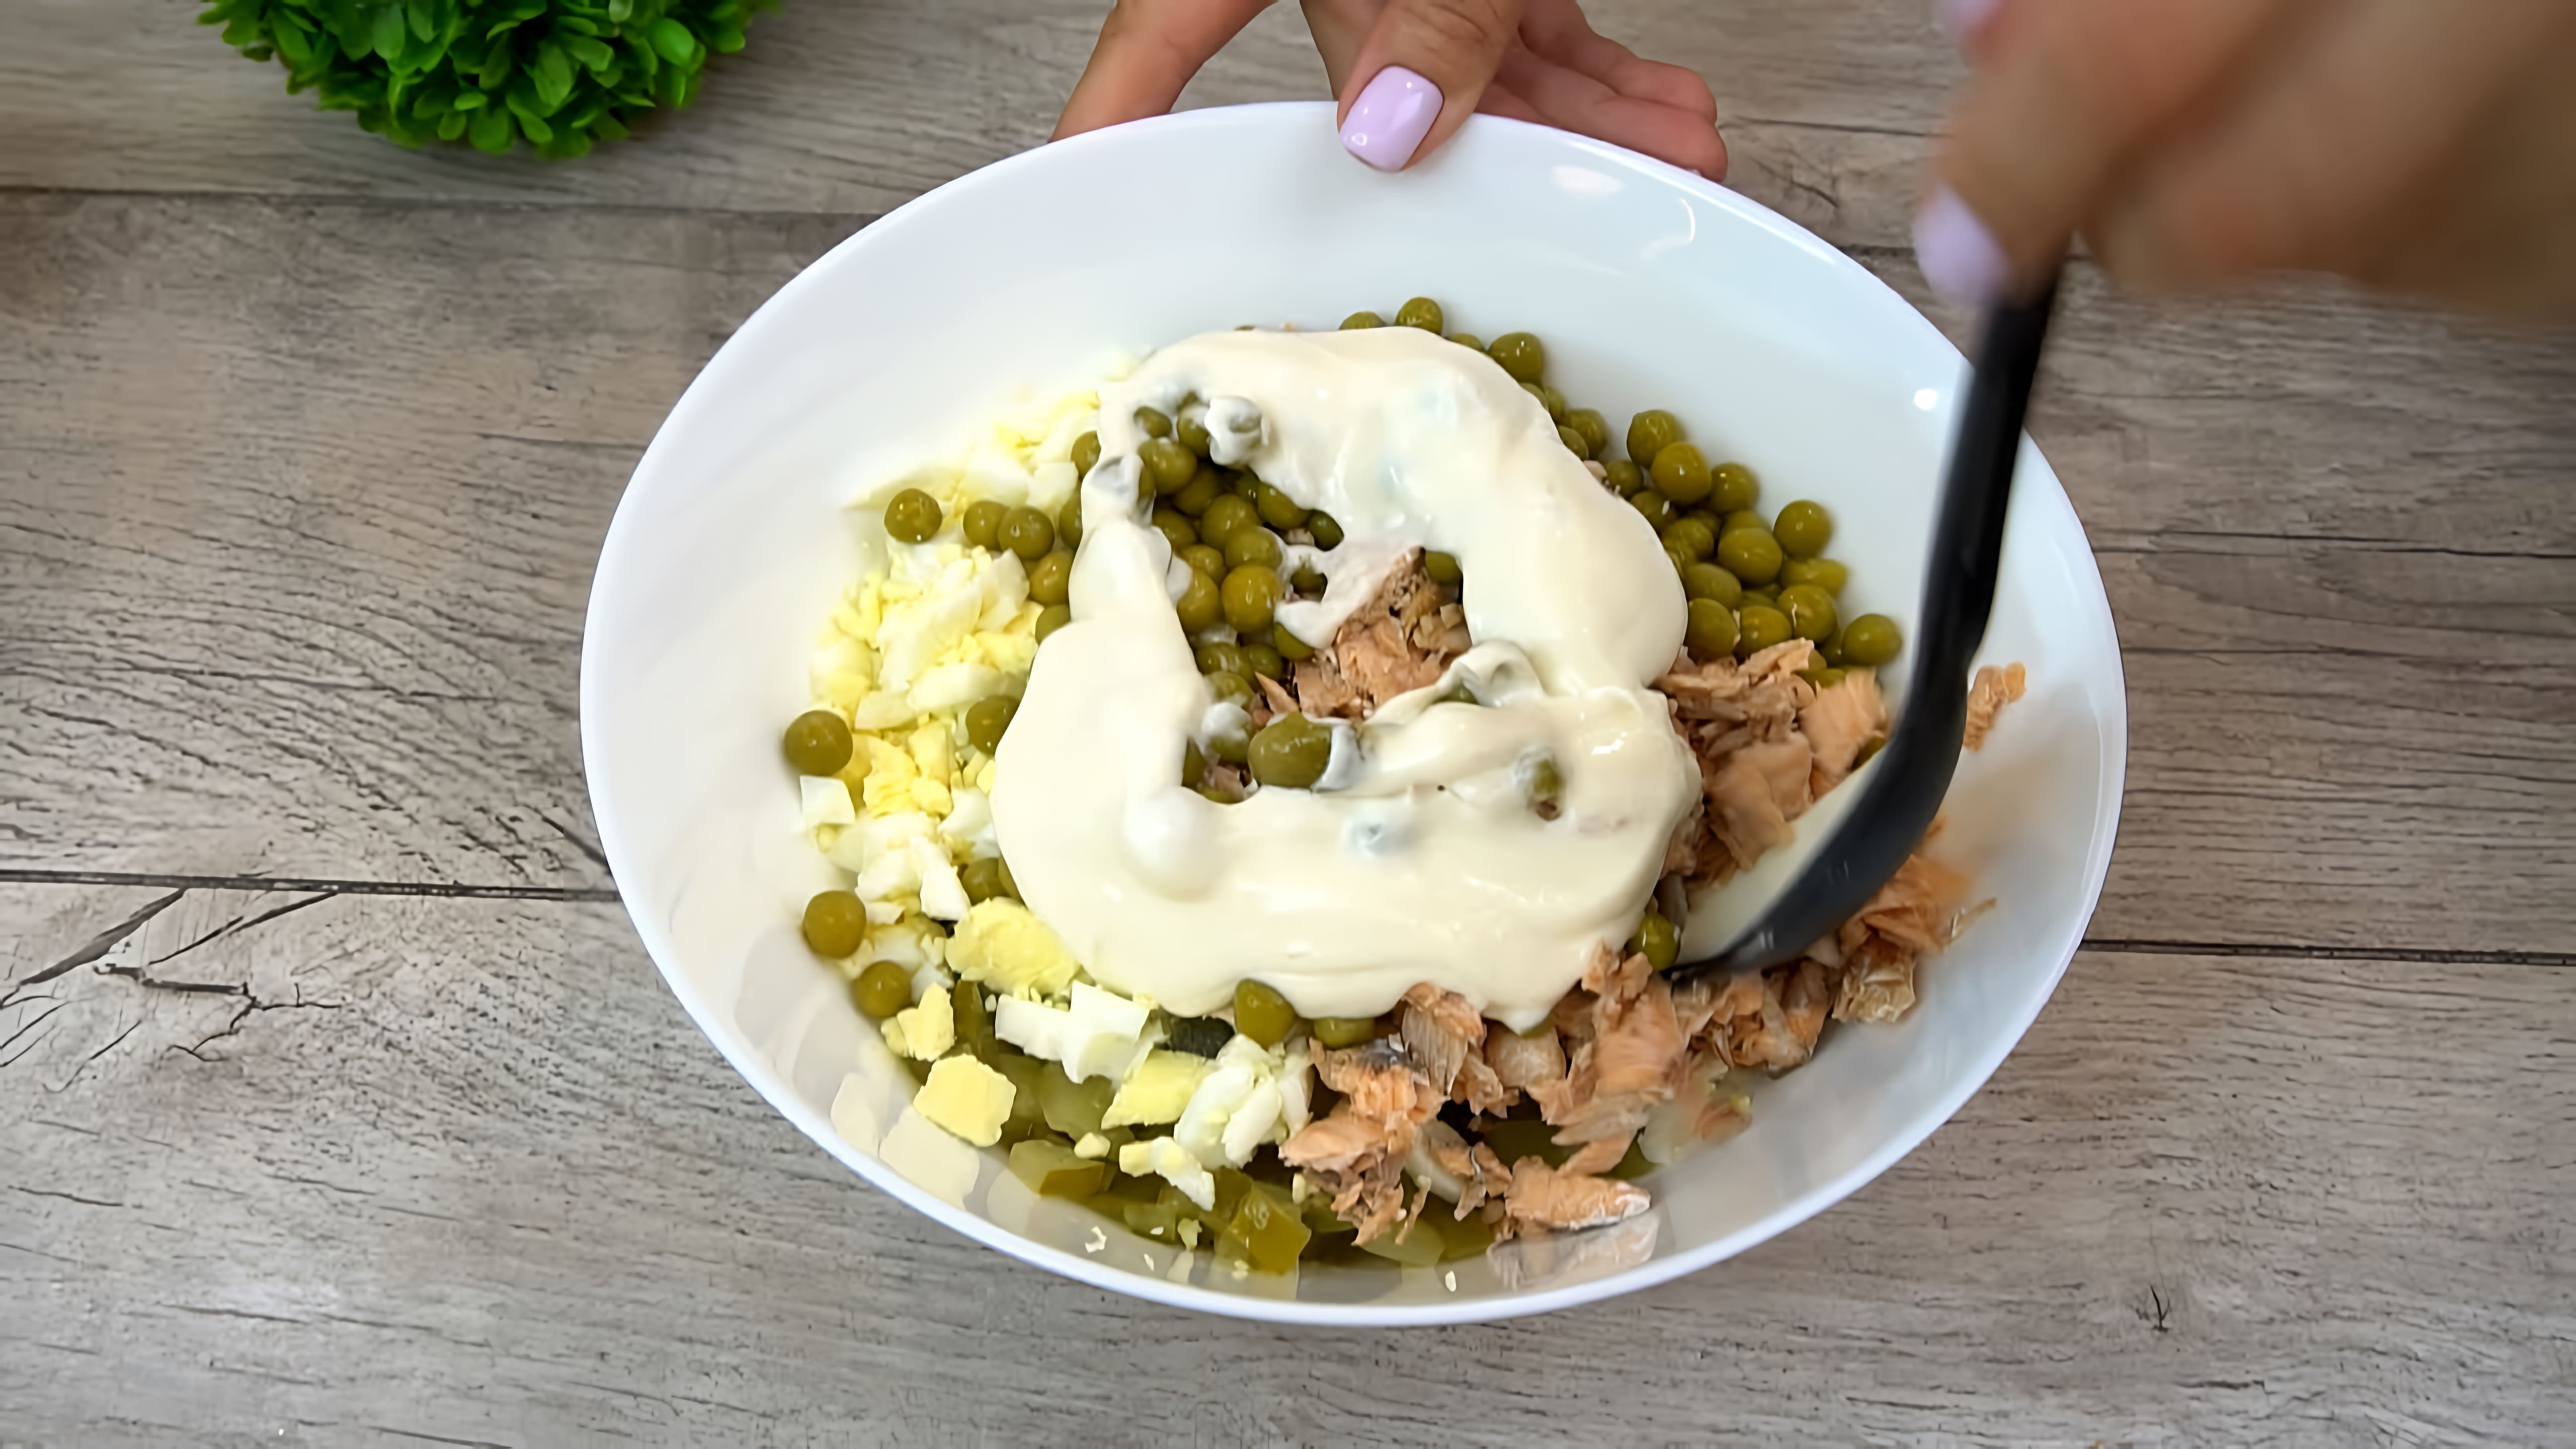 В этом видео демонстрируется рецепт салата из зеленого горошка и горбуши, который был популярен в 90-е годы